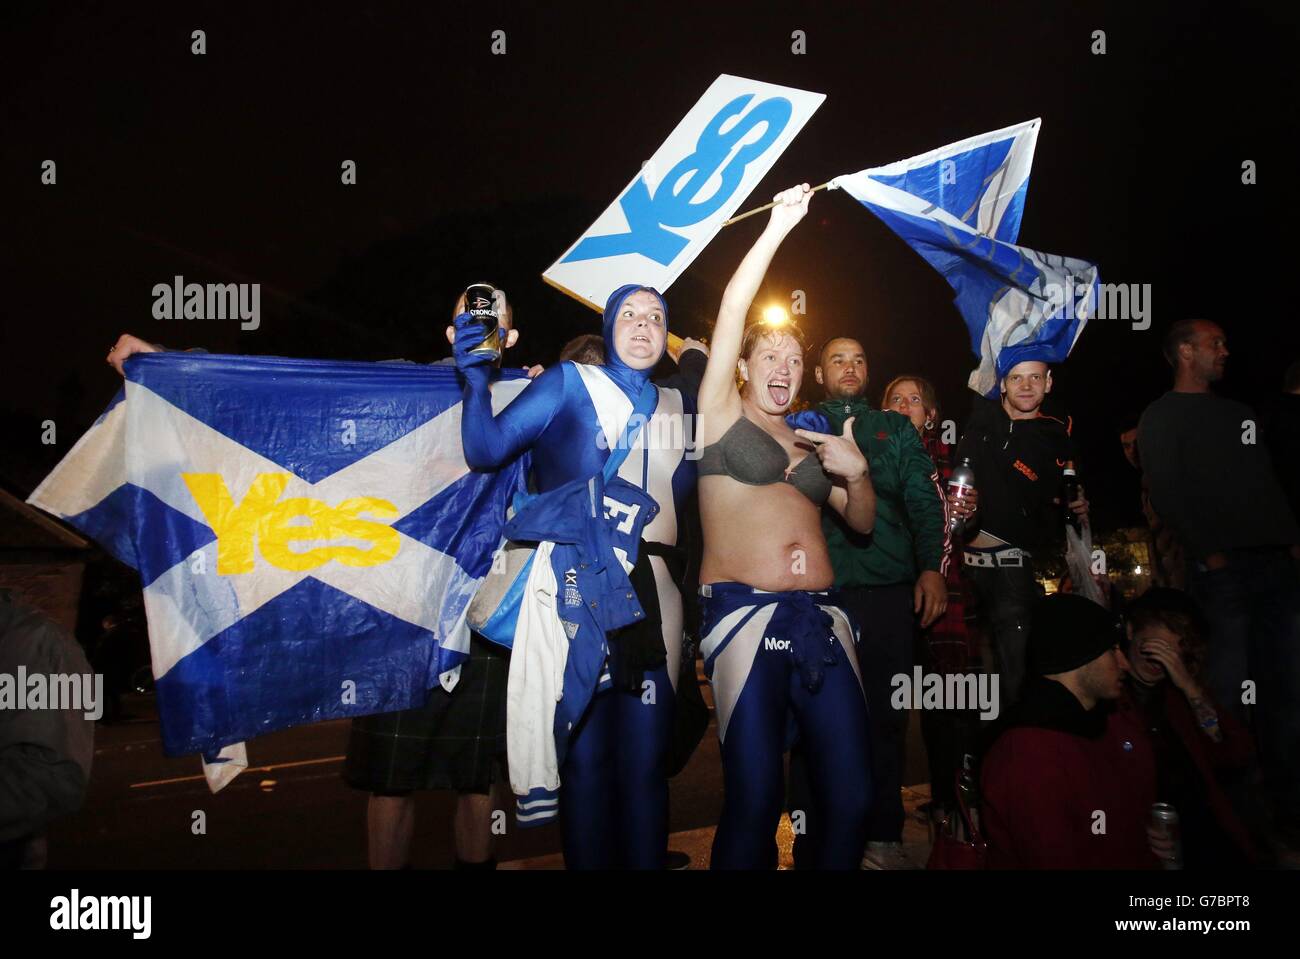 La scena al di fuori del Parlamento scozzese a Edimburgo come primo risultato del referendum sull'indipendenza ha dato un impulso agli attivisti pro-Regno Unito, con No che garantisce una vittoria confortevole nel Clackmannanshire. Foto Stock